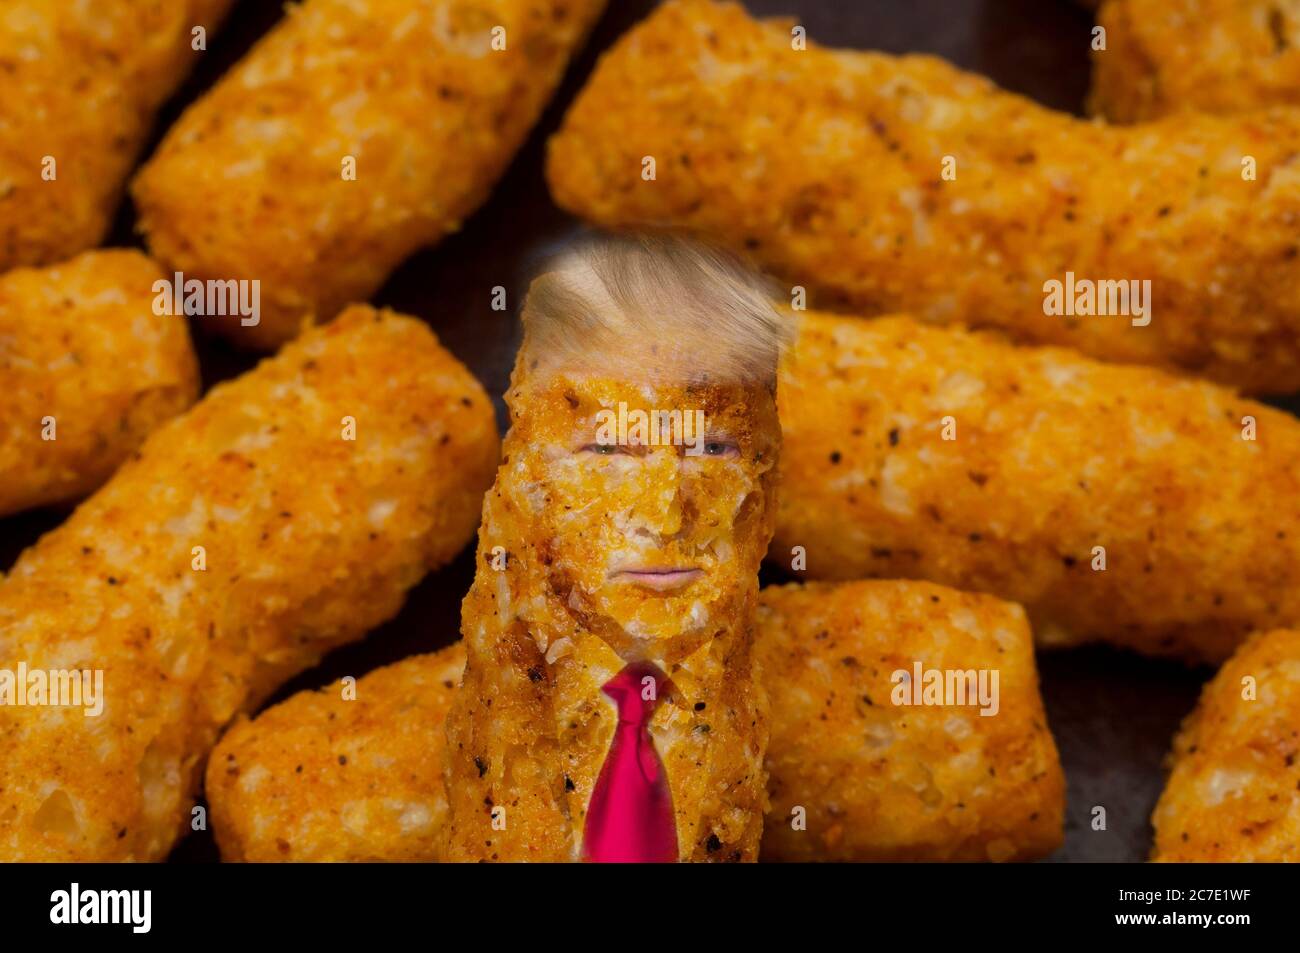 Un mazzo di boccette di formaggio color arancio, come Cheetos. Si ha la somiglianza di Donald Trump, con il suo colletto e i capelli spiondi. Foto Stock